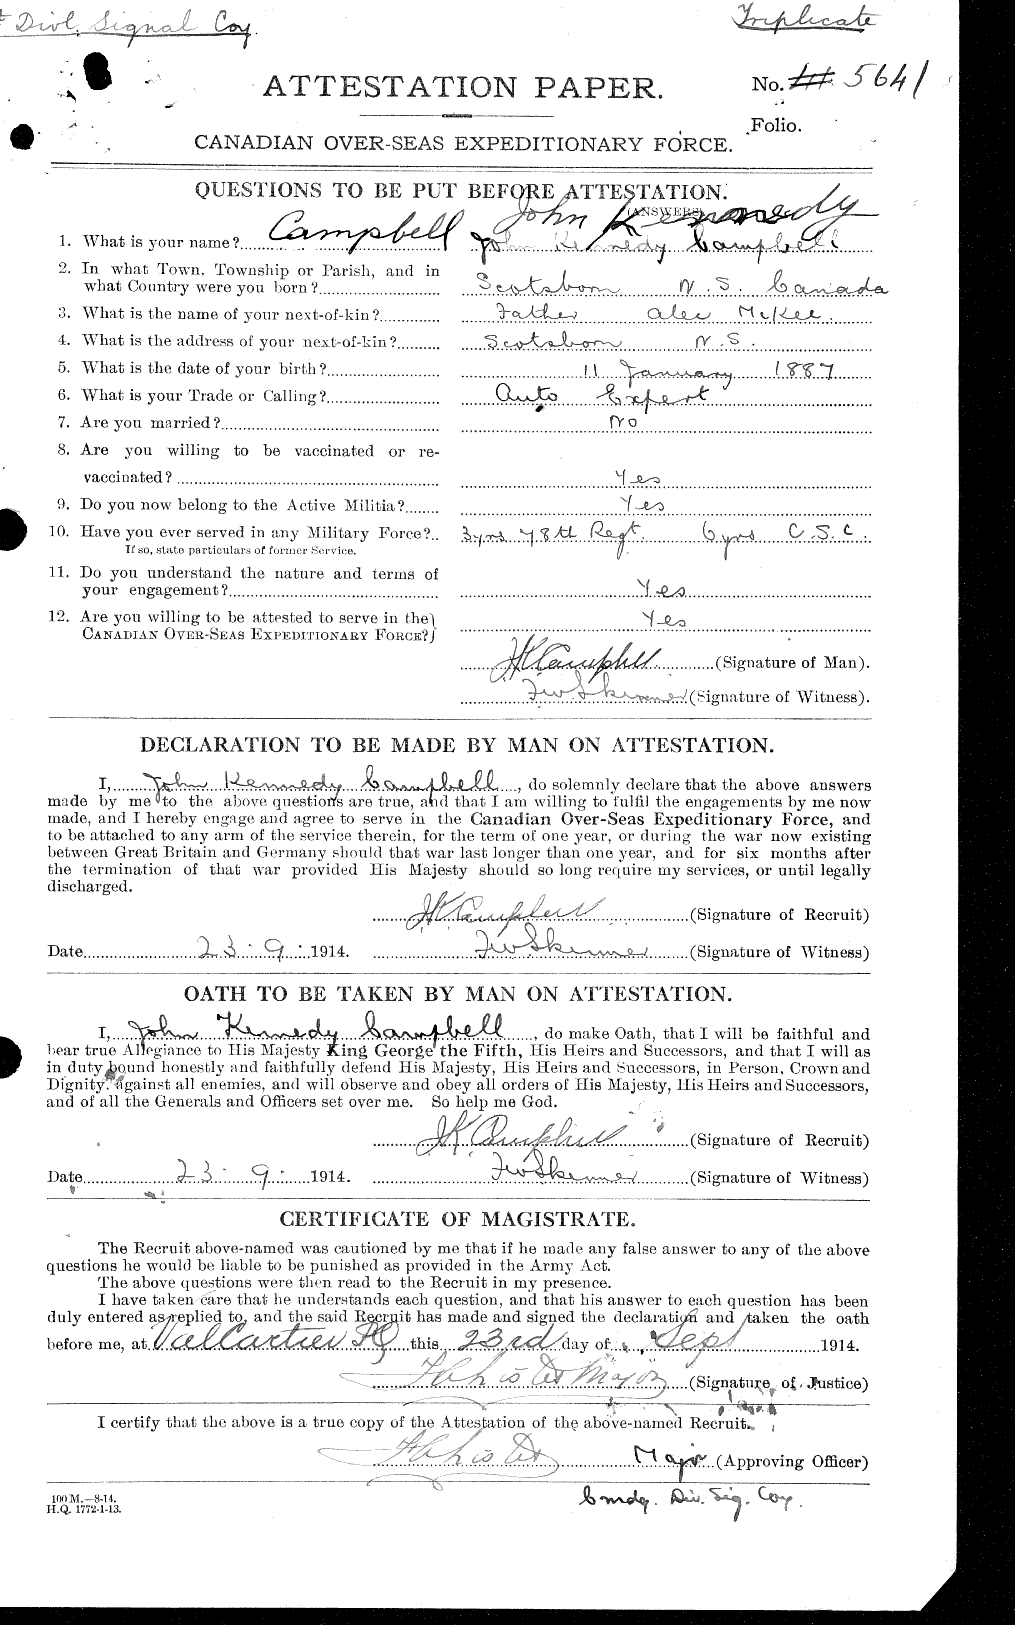 Dossiers du Personnel de la Première Guerre mondiale - CEC 003754a